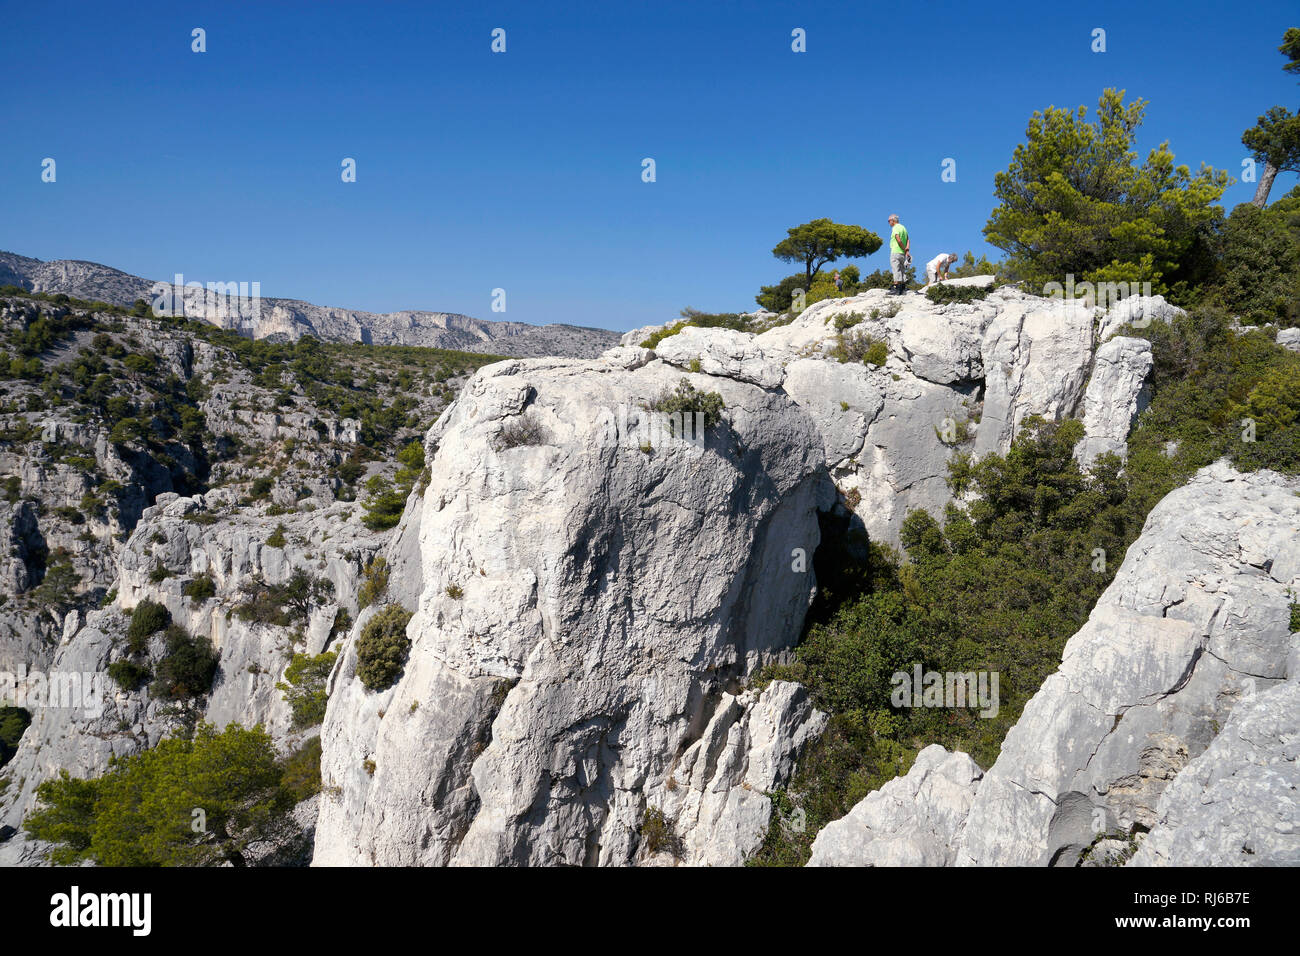 Europa, Frankreich, Provence-Alpes-Cote d'Azur, Bouches-du-Rhone, Marseille, Nationalpark Calanques, Calanque d'En-Vau Stock Photo